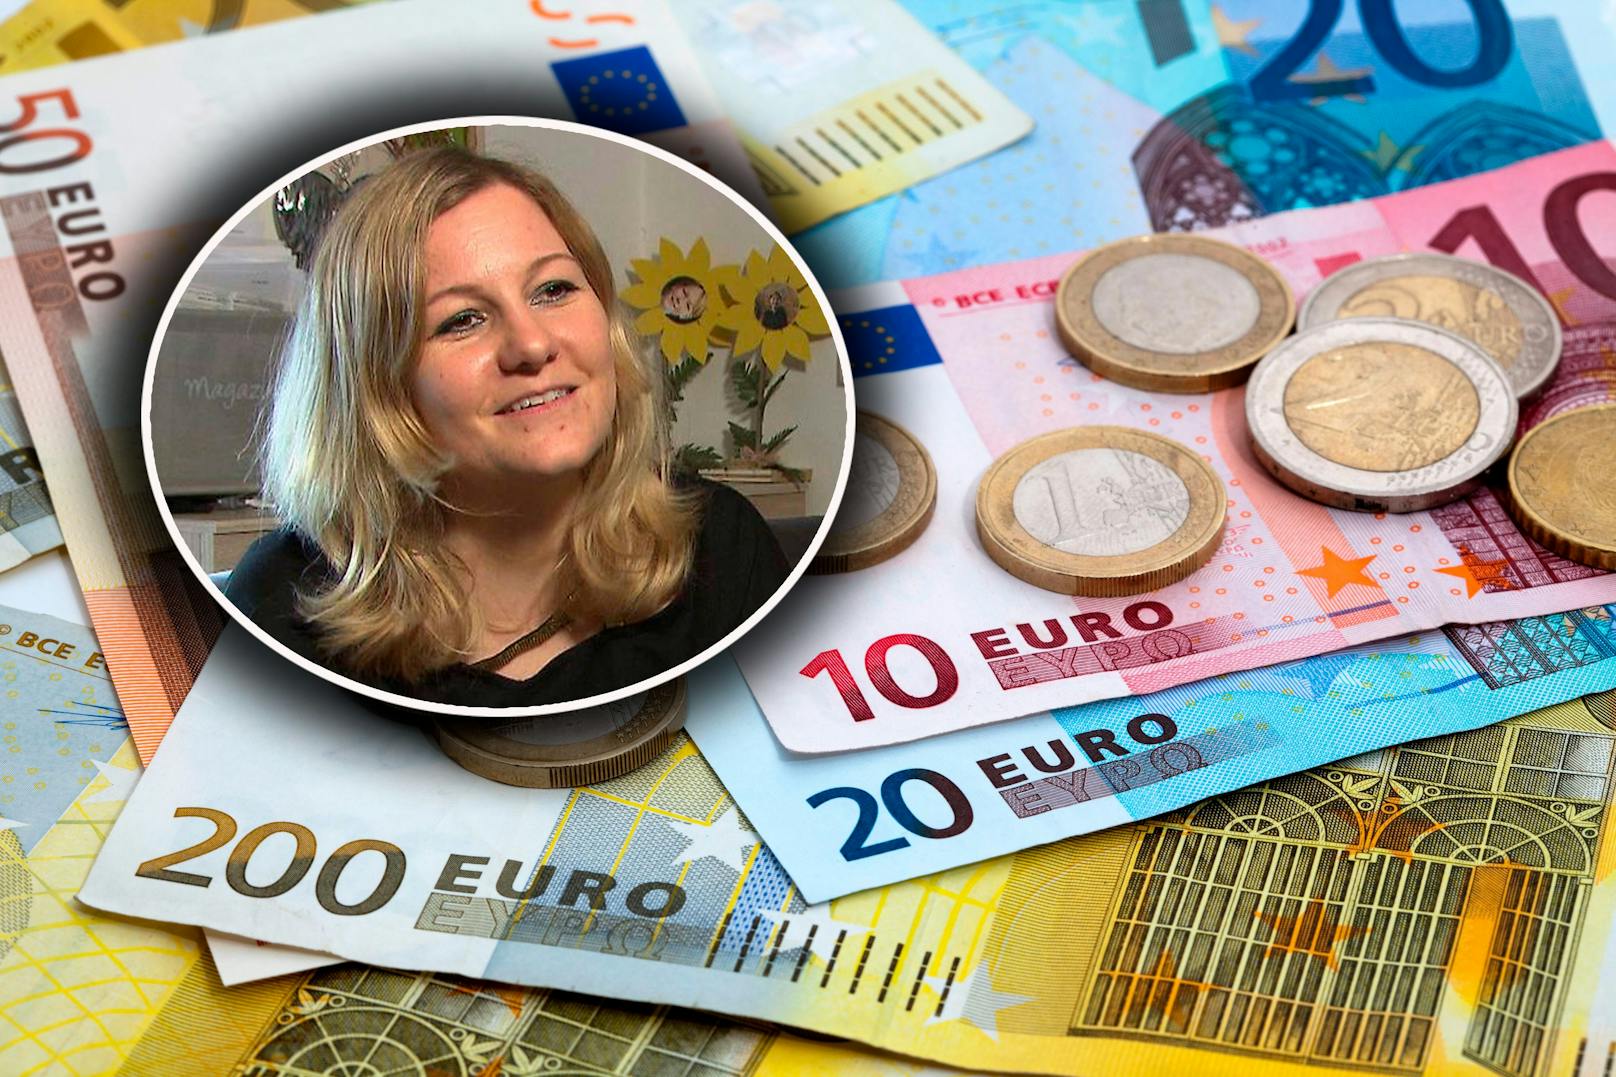 Melanie Katnik ist alleinerziehend und hat, nach Abzug aller Fixkosten, 110 Euro im Monat zur Verfügung.